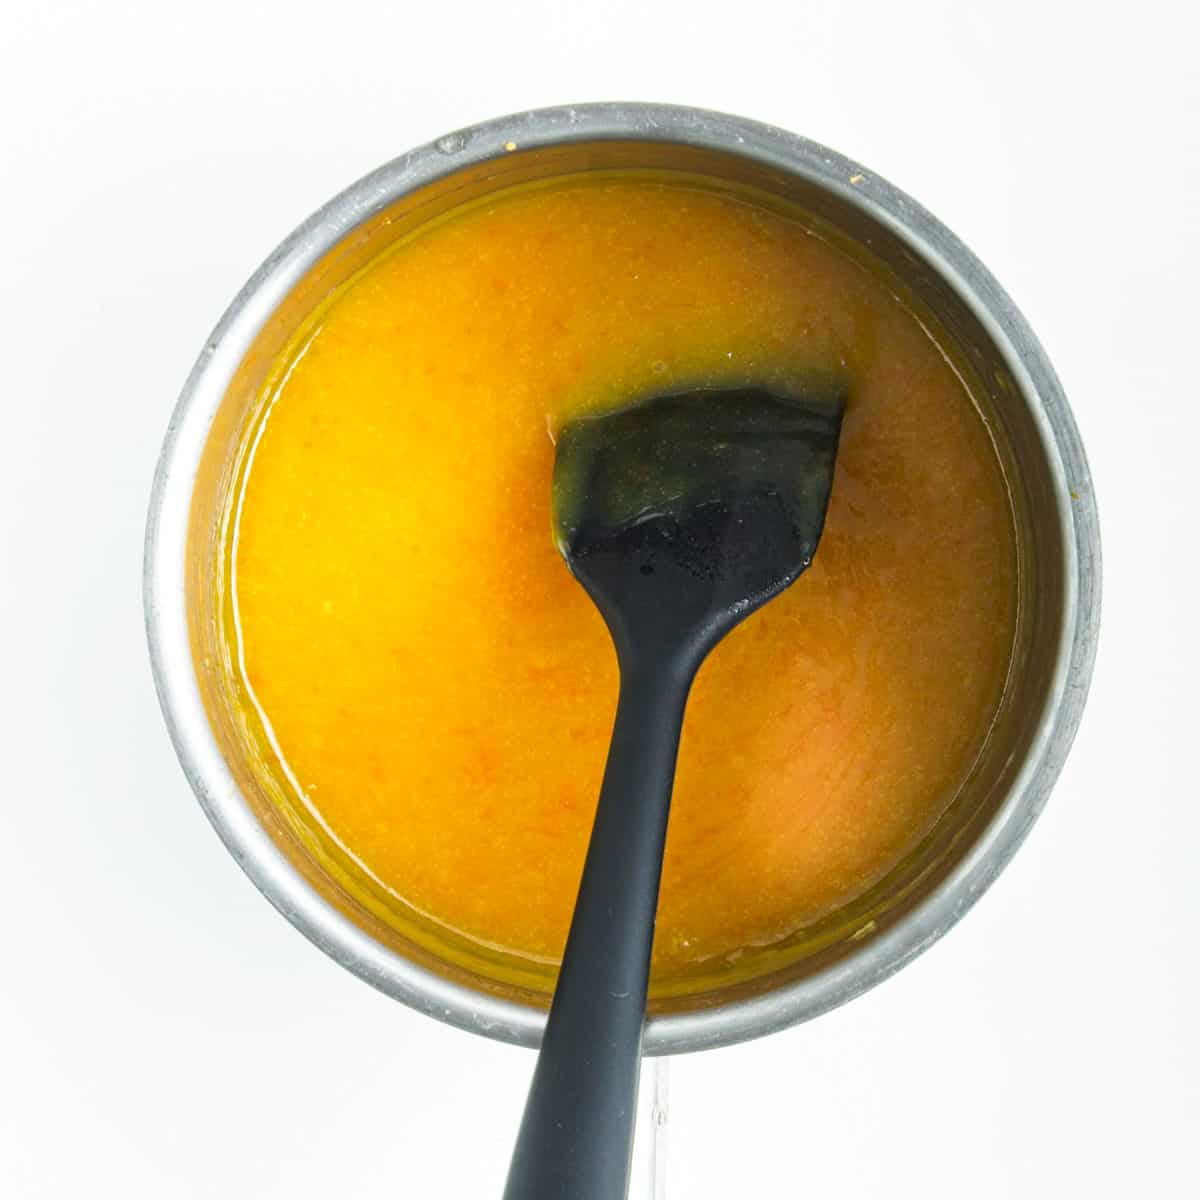 Orange curd cooking is saucepan and black flat spoon.